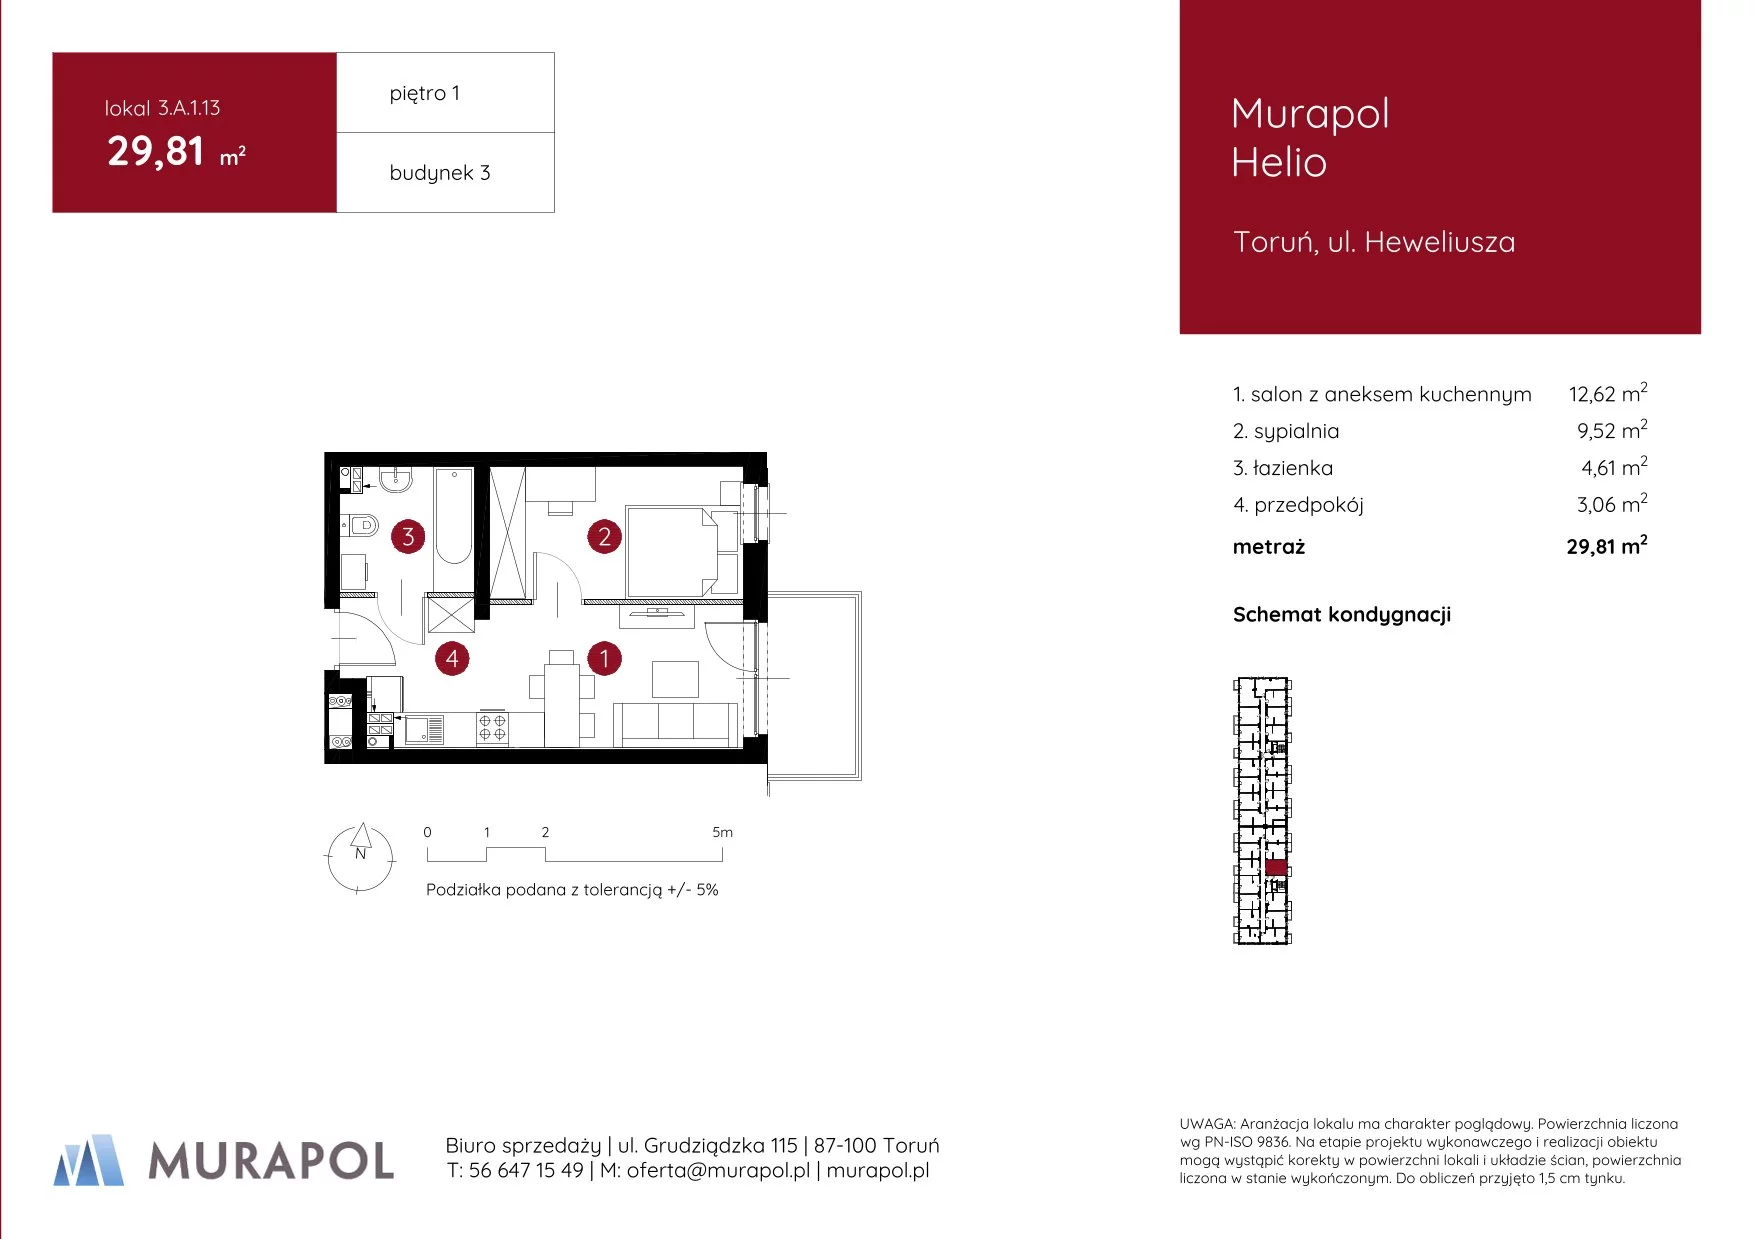 Mieszkanie 29,81 m², piętro 1, oferta nr 3.A.1.13, Murapol Helio, Toruń, Wrzosy, JAR, ul. Heweliusza